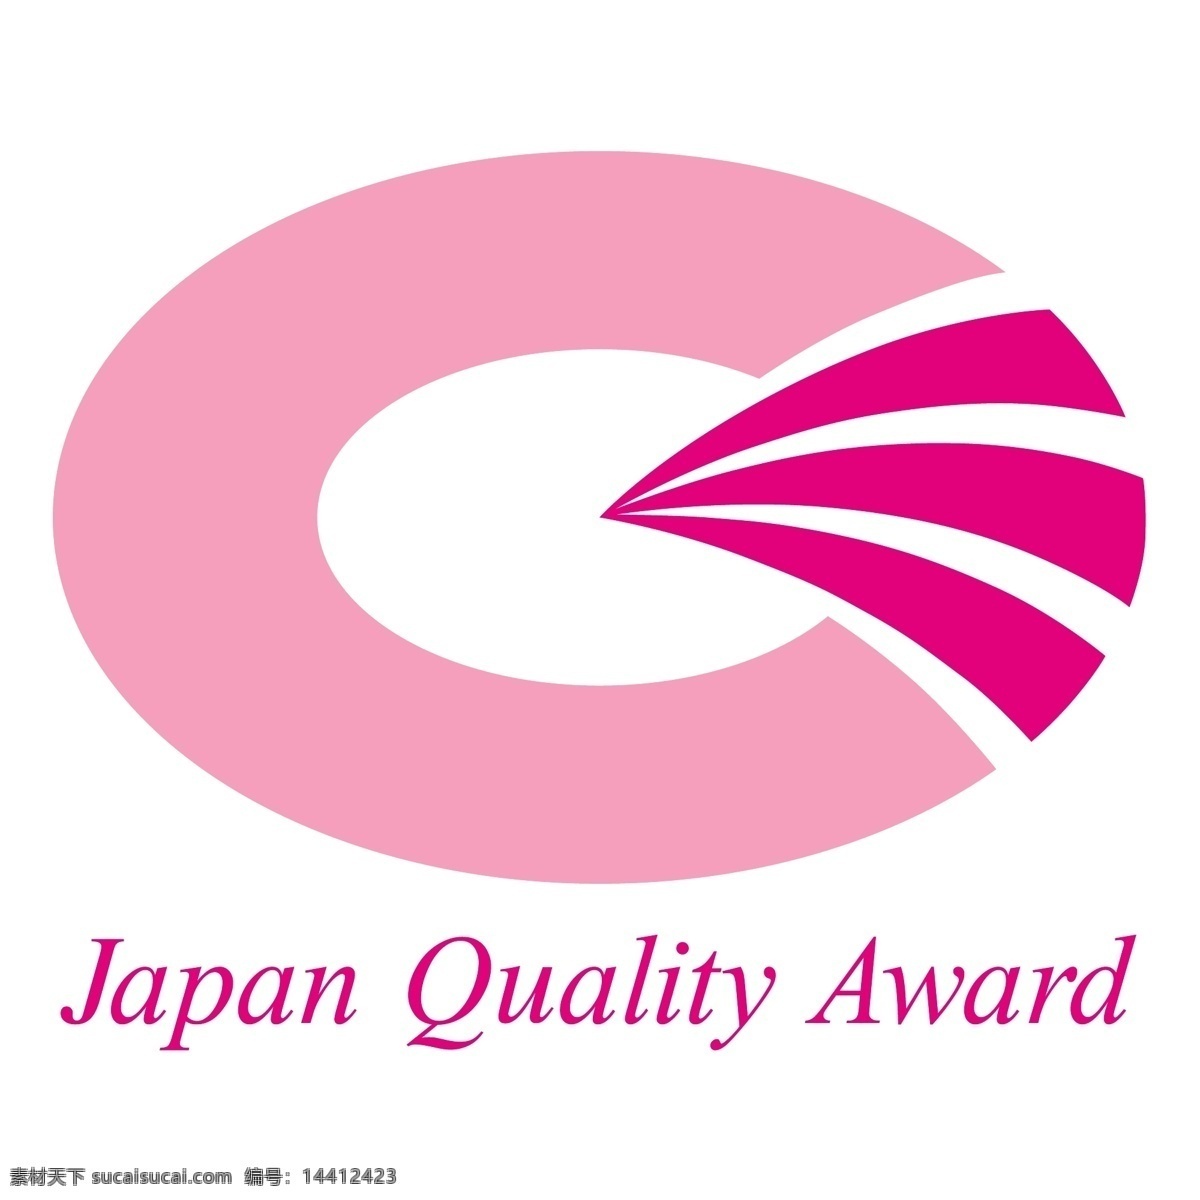 日本质量奖0 奖 日本 质量 日本的质量 质量奖 矢量 向量 国际 国际质量奖 标志 矢量日本 矢量图 建筑家居